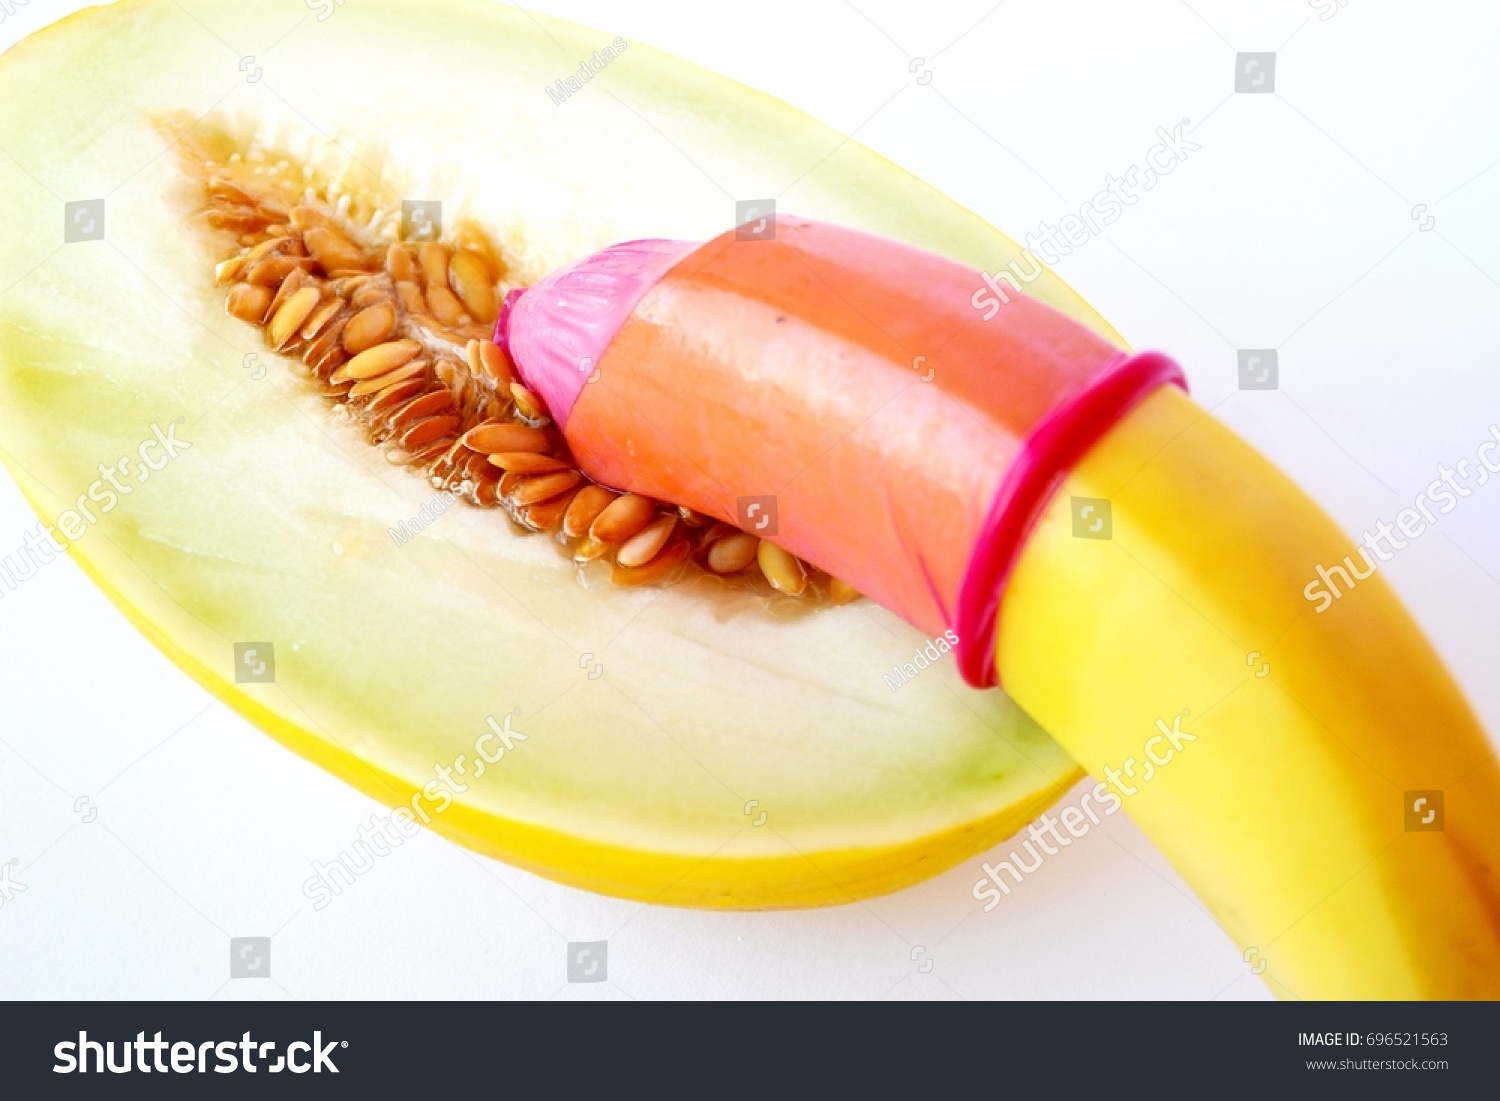 banana vs vagina